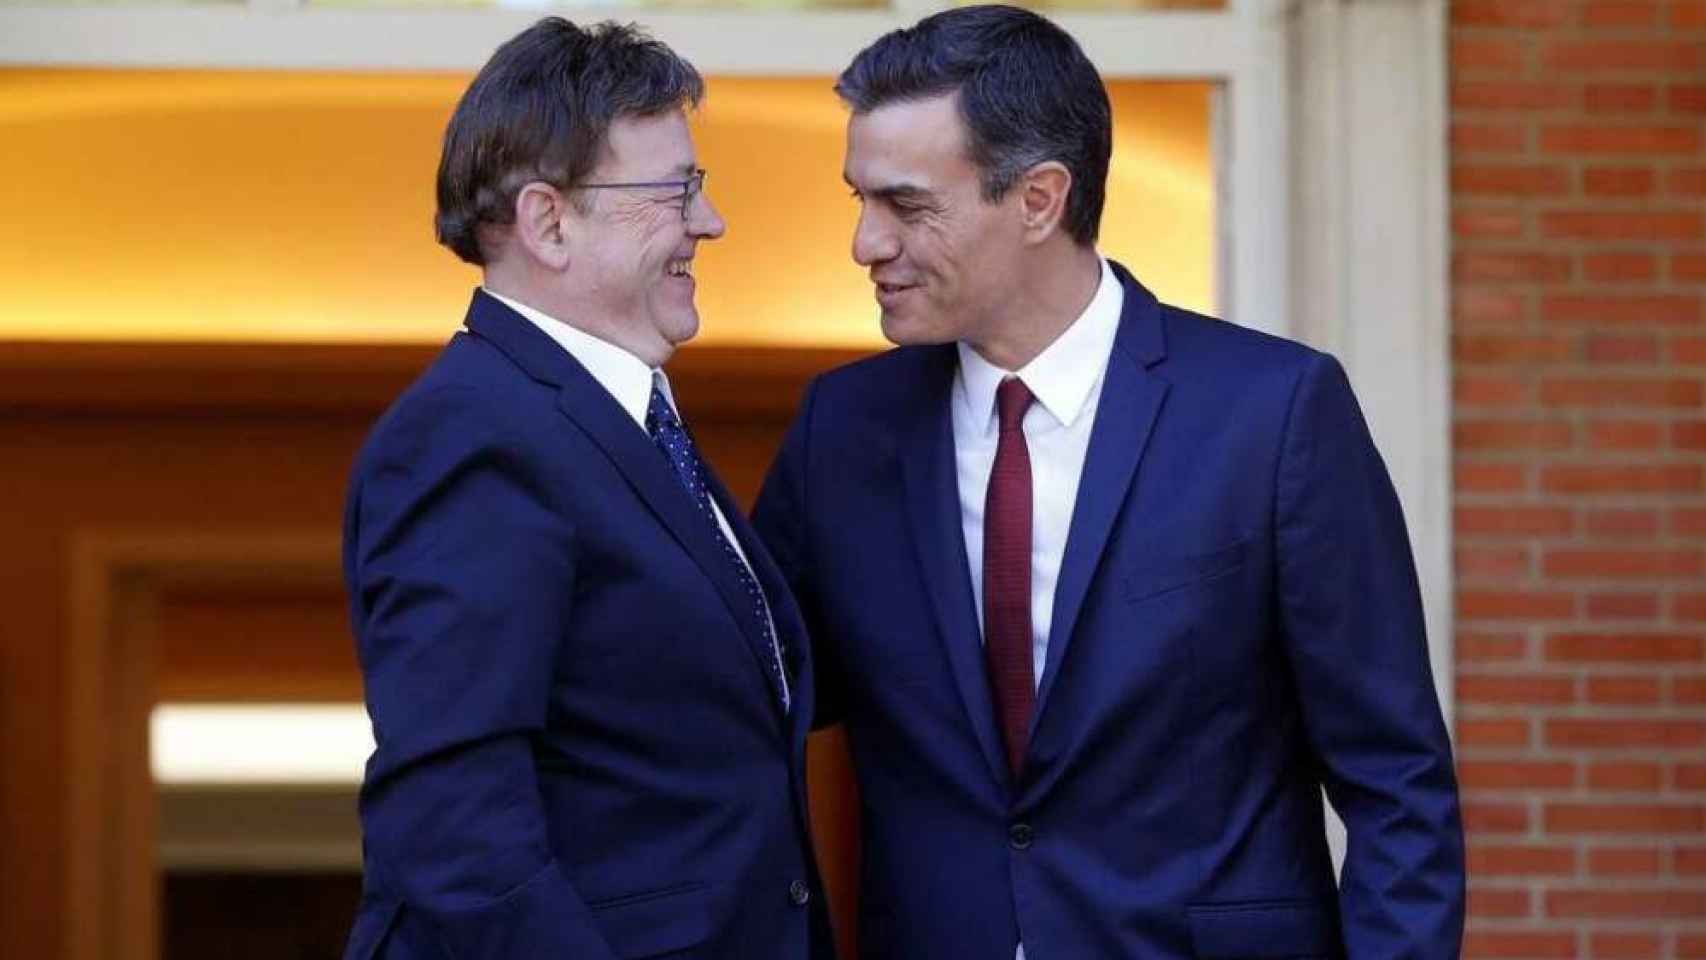 El presidente de la Generalitat Valenciana, Ximo Puig, y el presidente del Gobierno, Pedro Sánchez, ambos del PSOE.